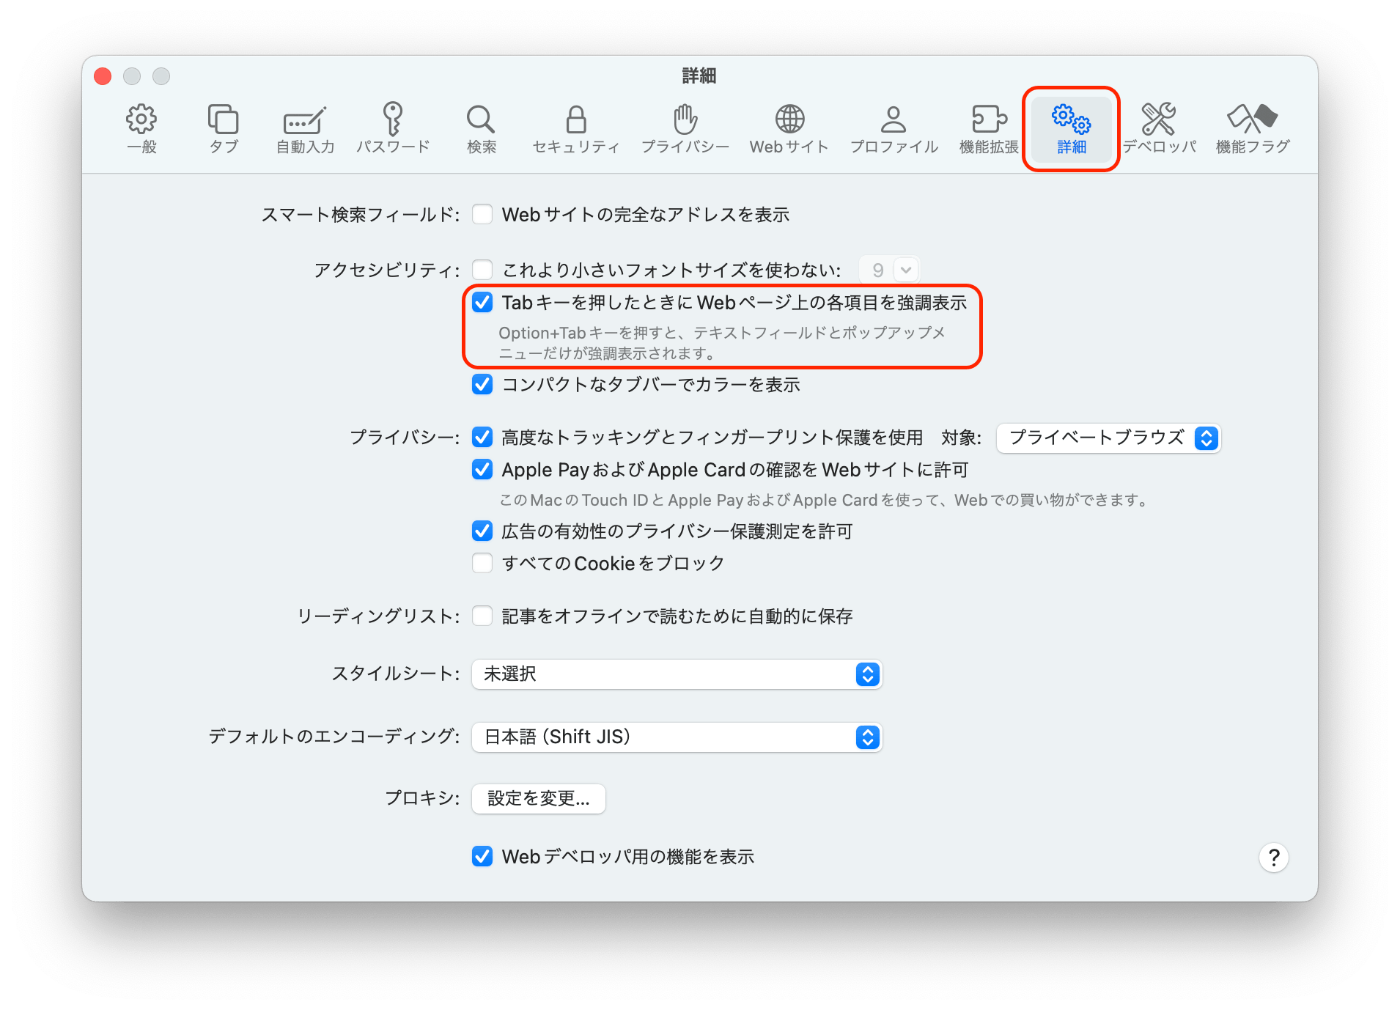 Safariの環境設定で「詳細」ページに移動し、「Tabキーを押したときにWebページ上の各項目を強調表示」にチェックを入れていることを示すスクリーンショット